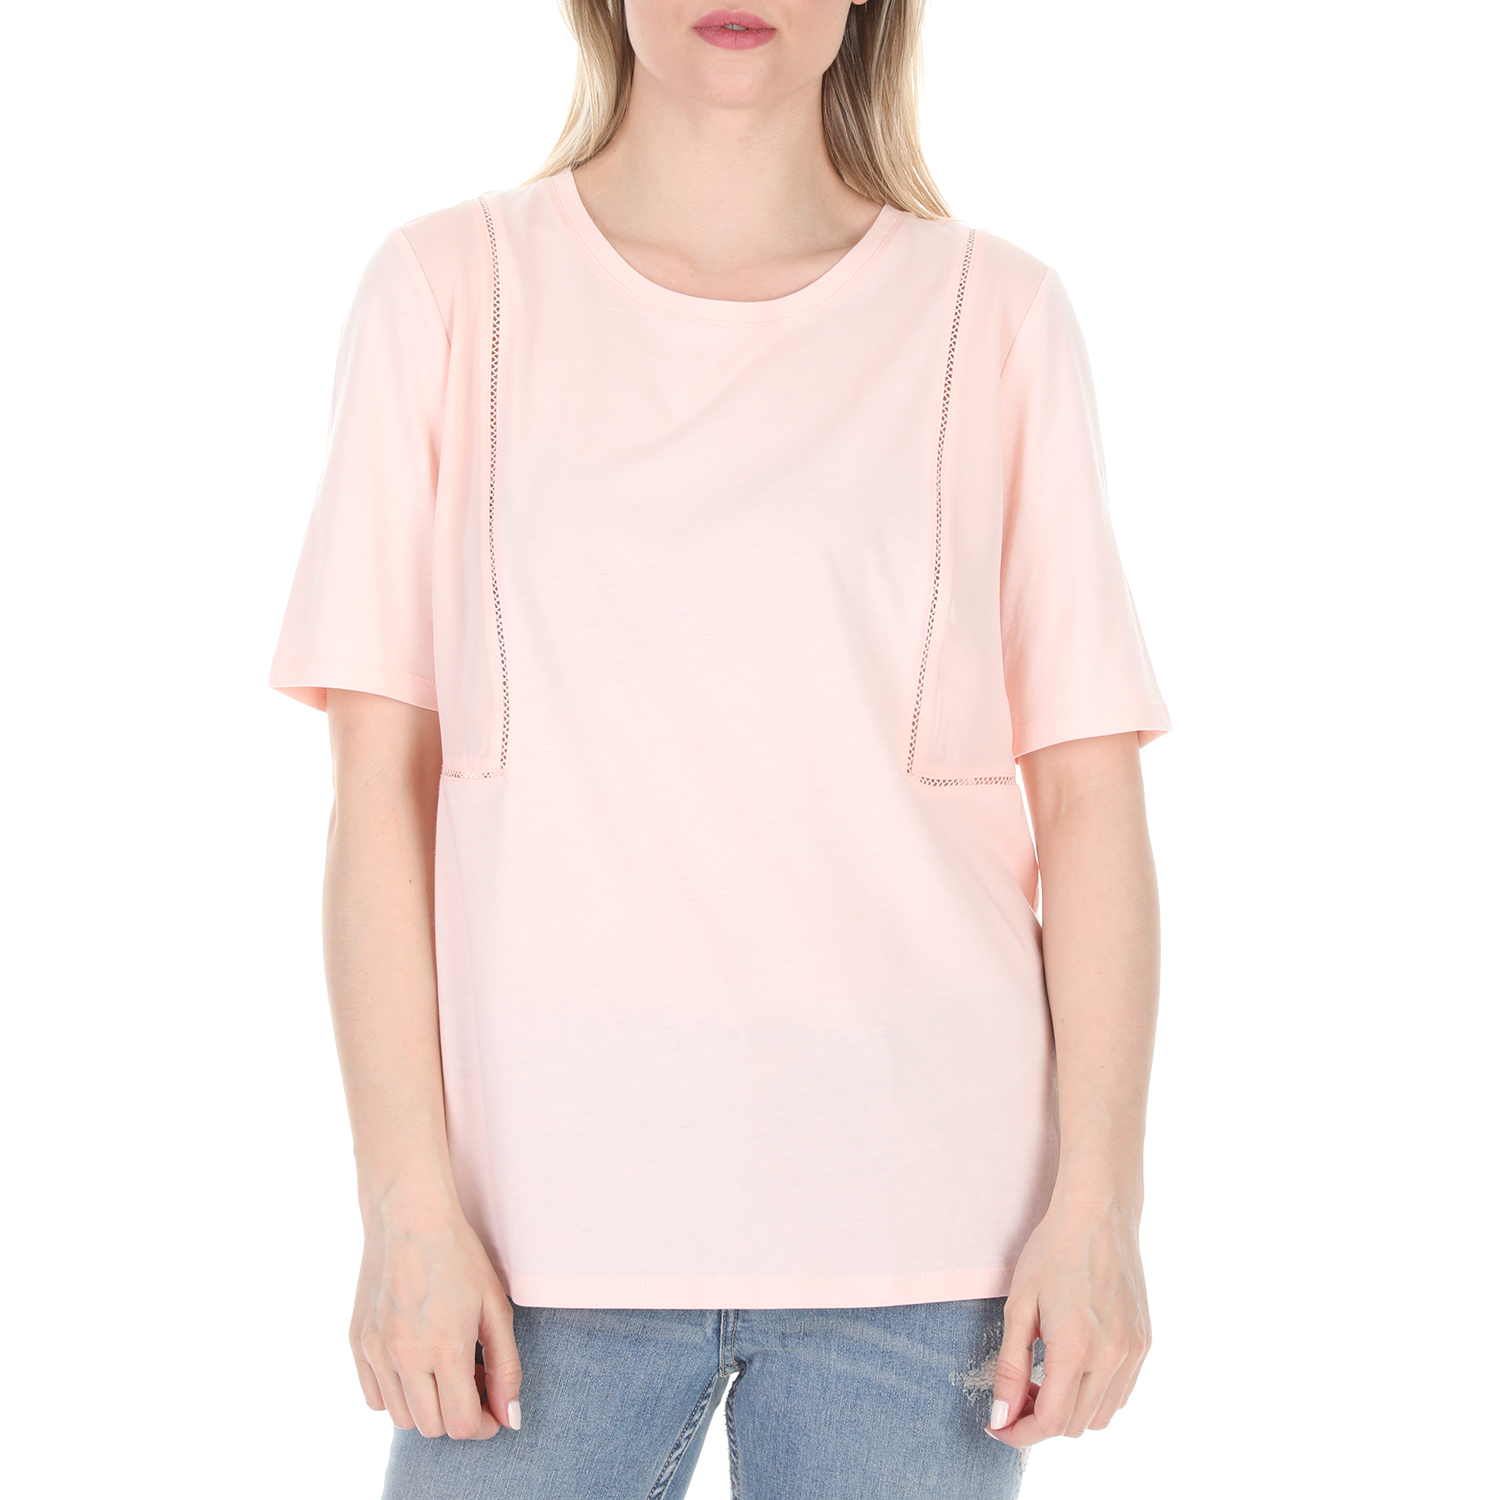 Γυναικεία/Ρούχα/Μπλούζες/Κοντομάνικες SCOTCH & SODA - Γυναικεία μπλούζα SCOTCH & SODA ροζ